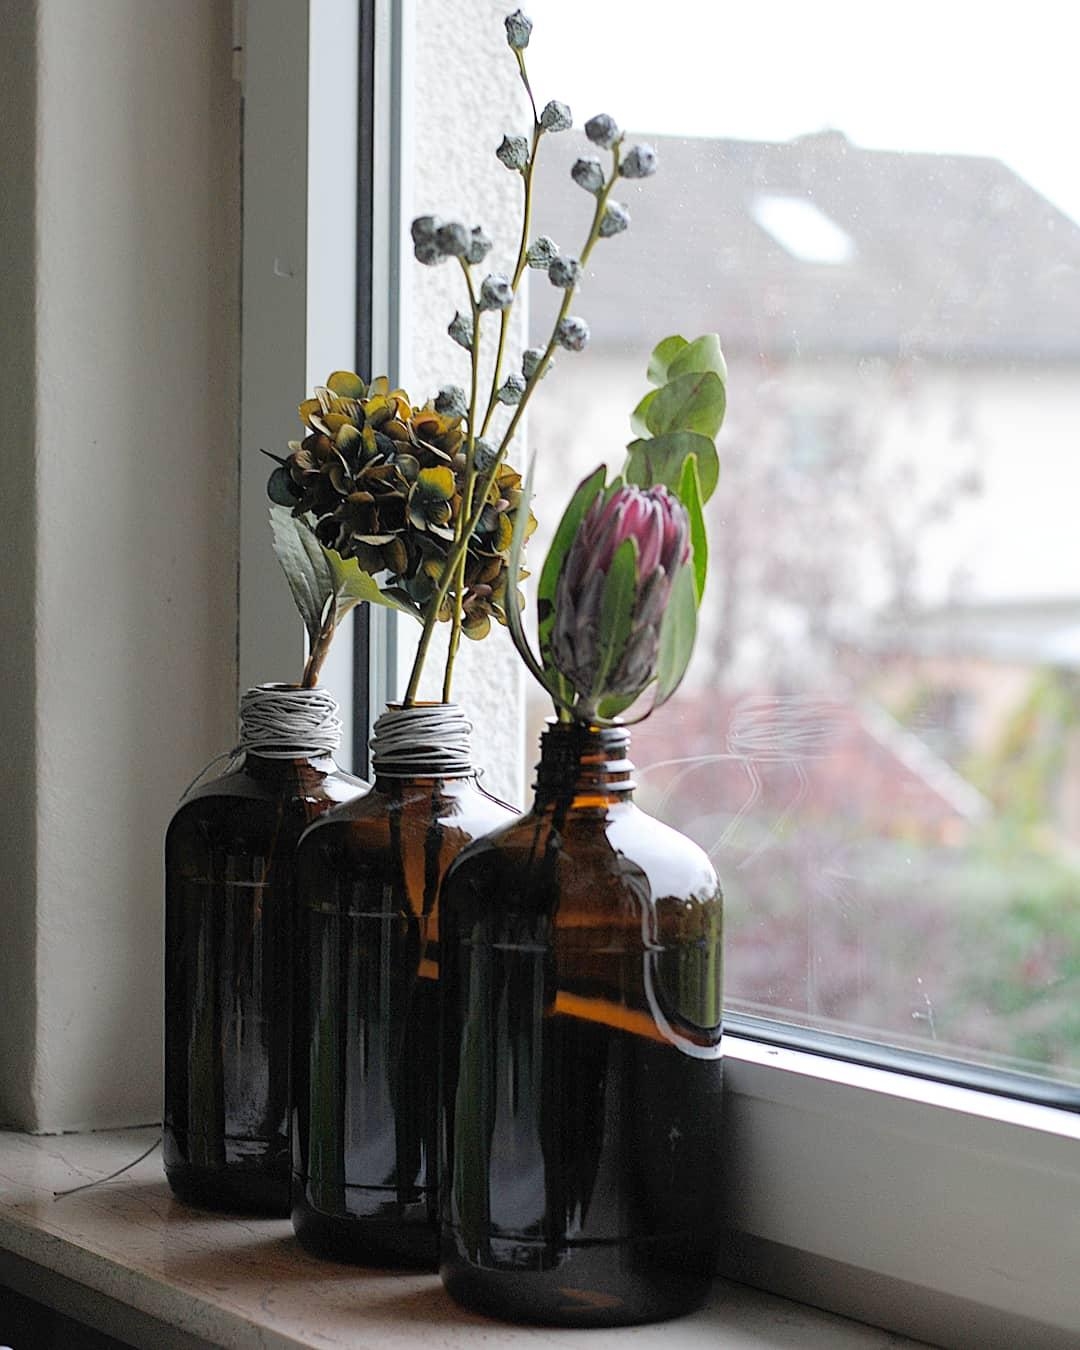 Vasentrio aus ausgedienten Laborflaschen
#upcycling #vasenliebe #flowers #couchstyle #couchliebt